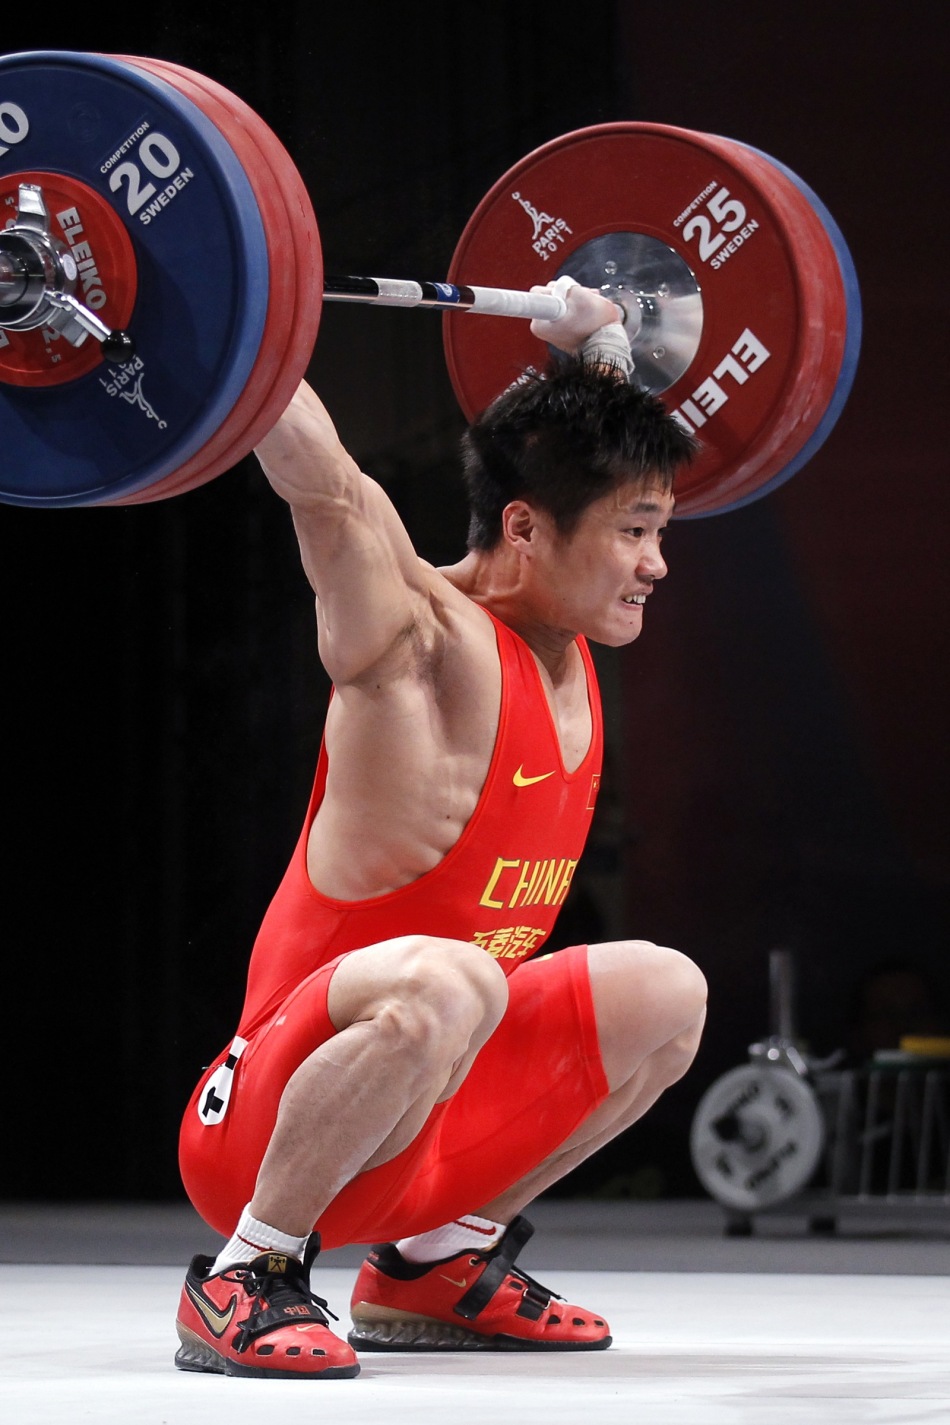 中国举重运动员吕小军图片